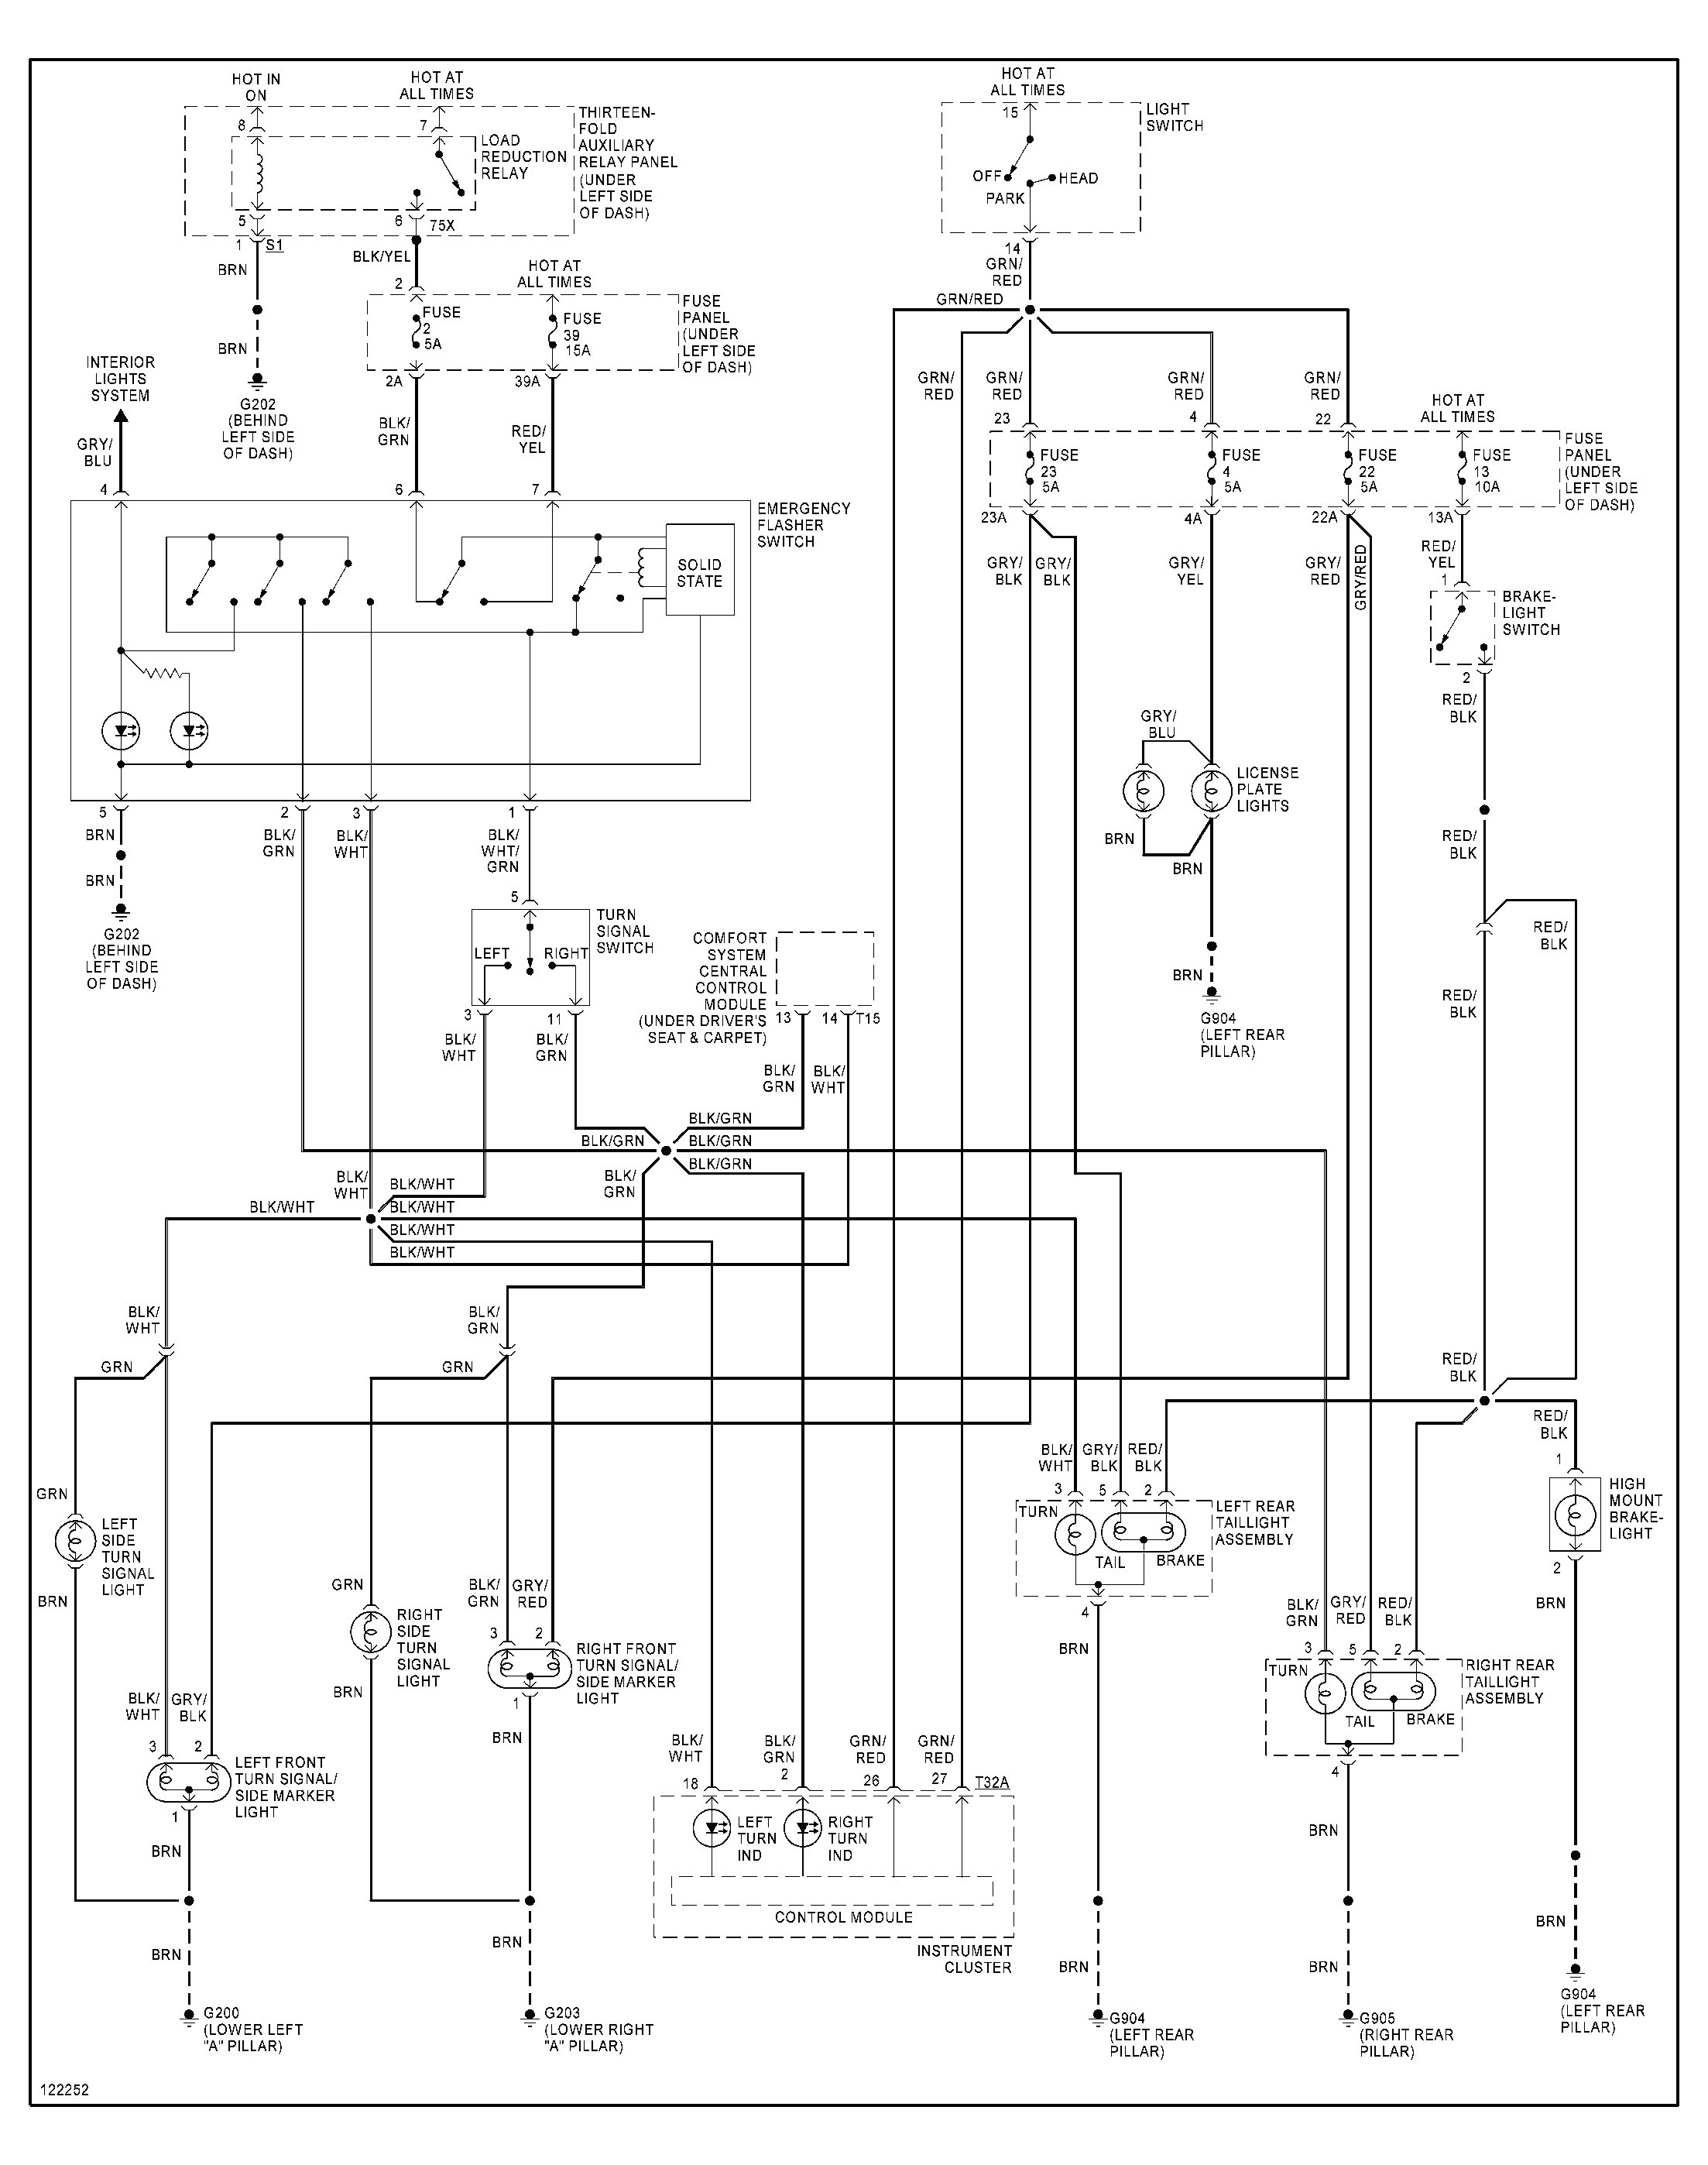 2003 vw wiring diagram wiring diagram database vw golf mk5 r32 wiring diagram vw passat engine